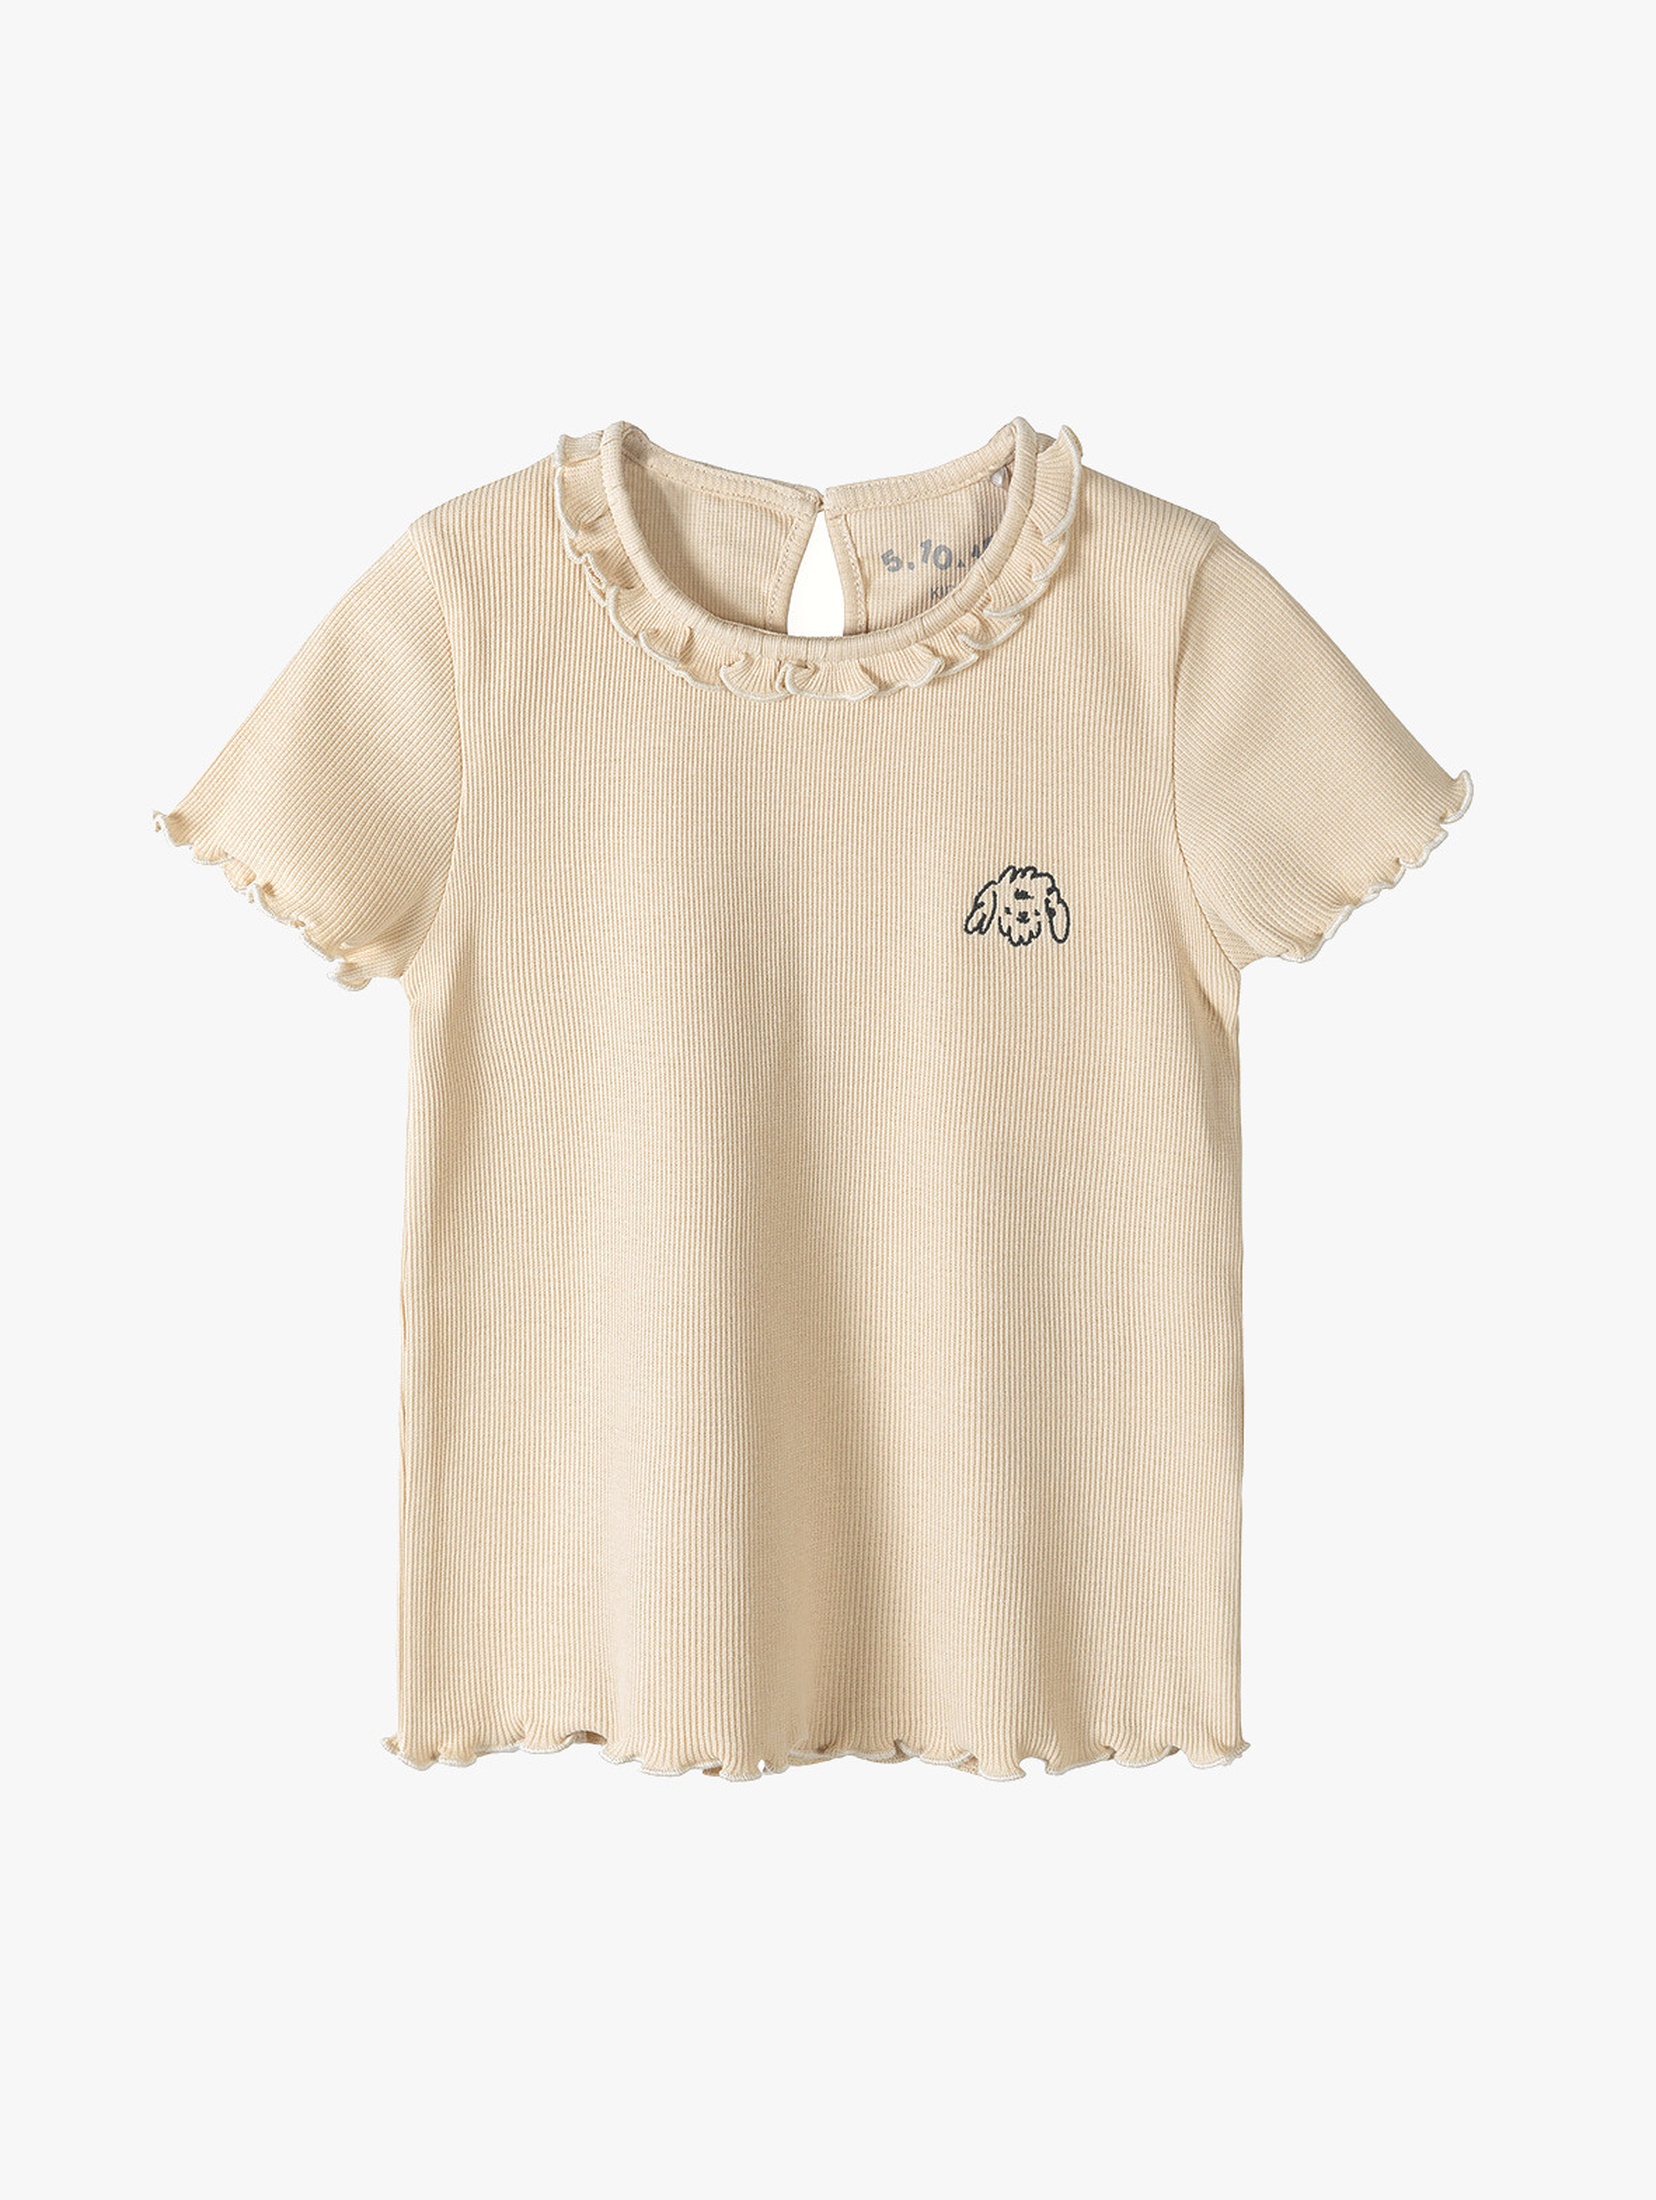 Beżowy t-shirt dziewczęcy z pieskiem - dzianinowy w prążki 5.10.15.